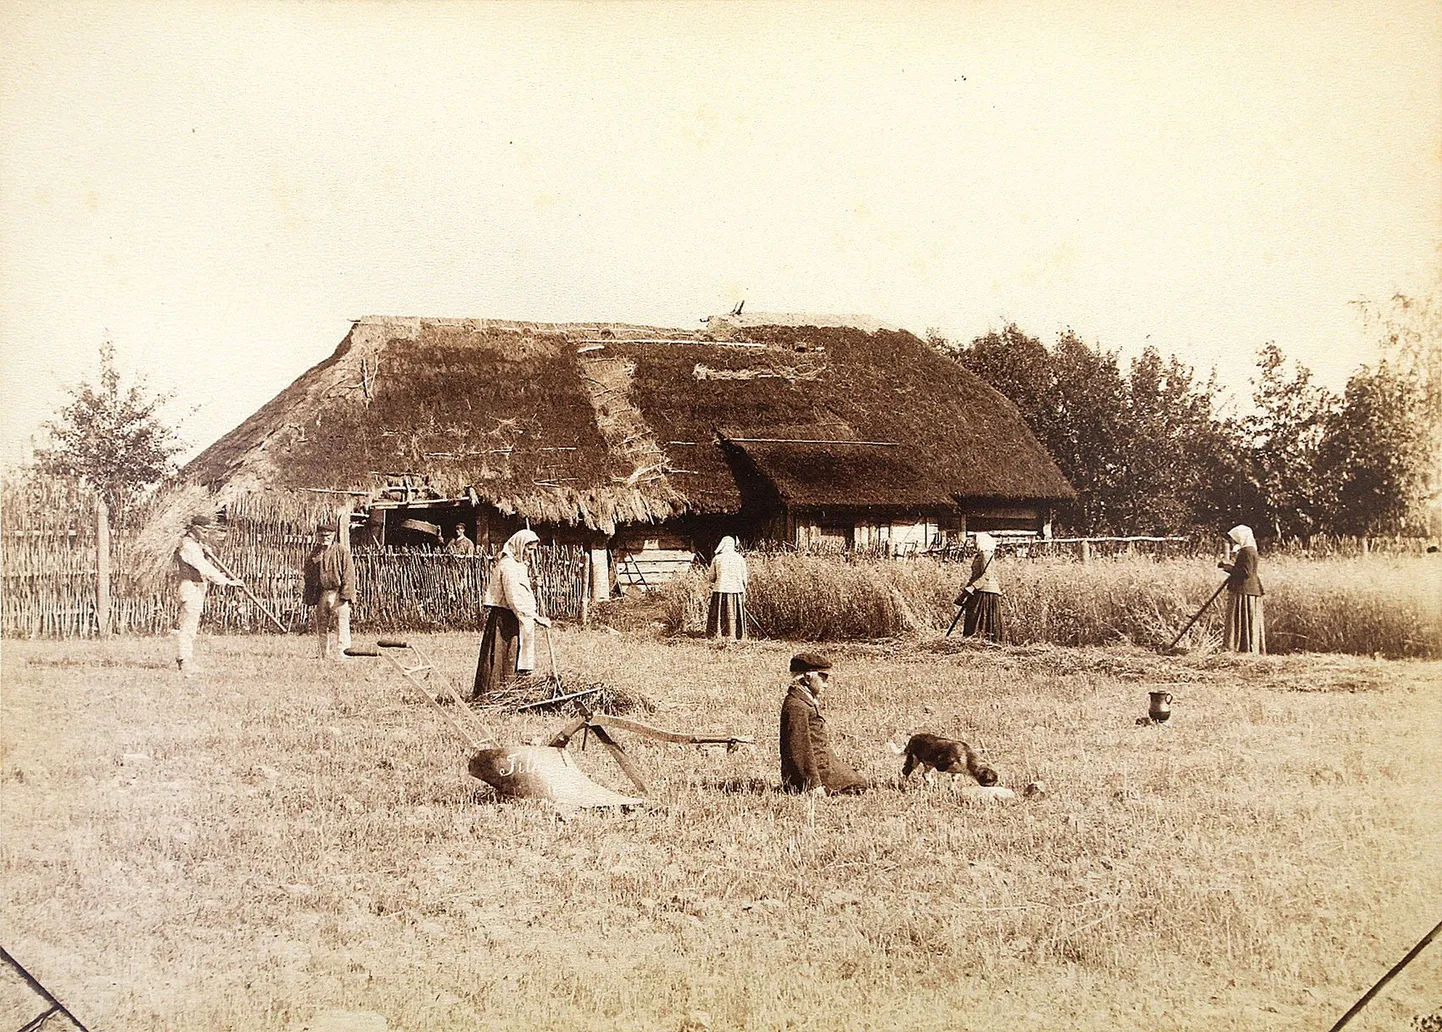 Tori kihelkonnast pärit Mihkel Tilk (1859–1890) on oma sünnikodus Kolmetarga talus lavastanud fotokompositsiooniks viljalõikajad ning nende ette adra koos poisi, koera ja veekannuga.